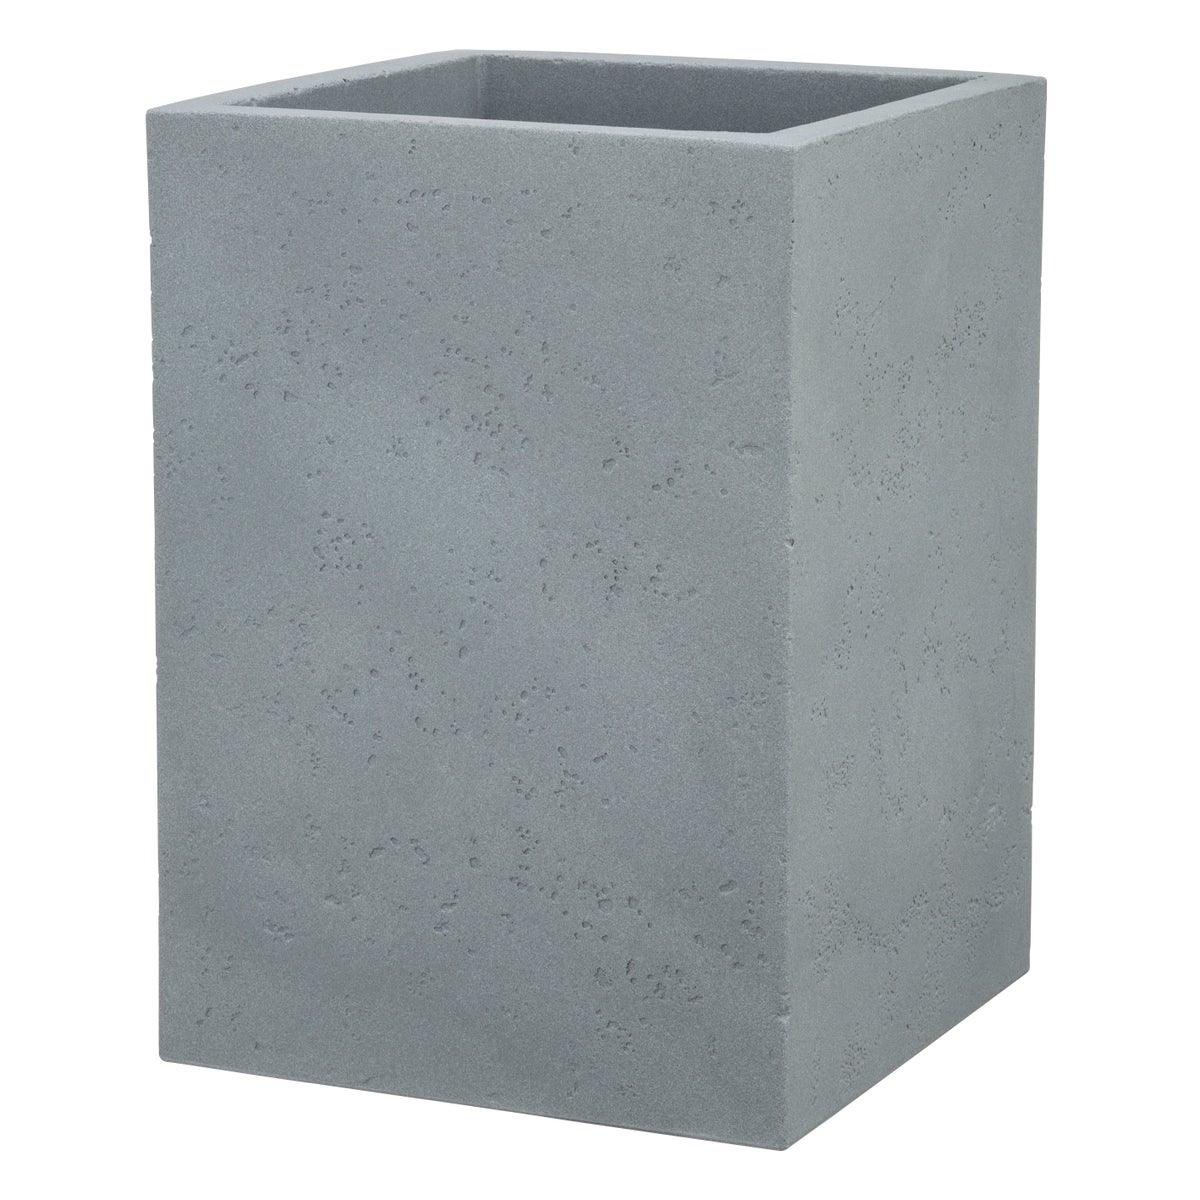 Scheurich C-Cube High 54, Hochgefäß/Blumentopf/Pflanzkübel, quadratisch,  aus Kunststoff Farbe: Stony Grey, 38 cm Durchmesser, 53,7 cm hoch, 26 l Vol.